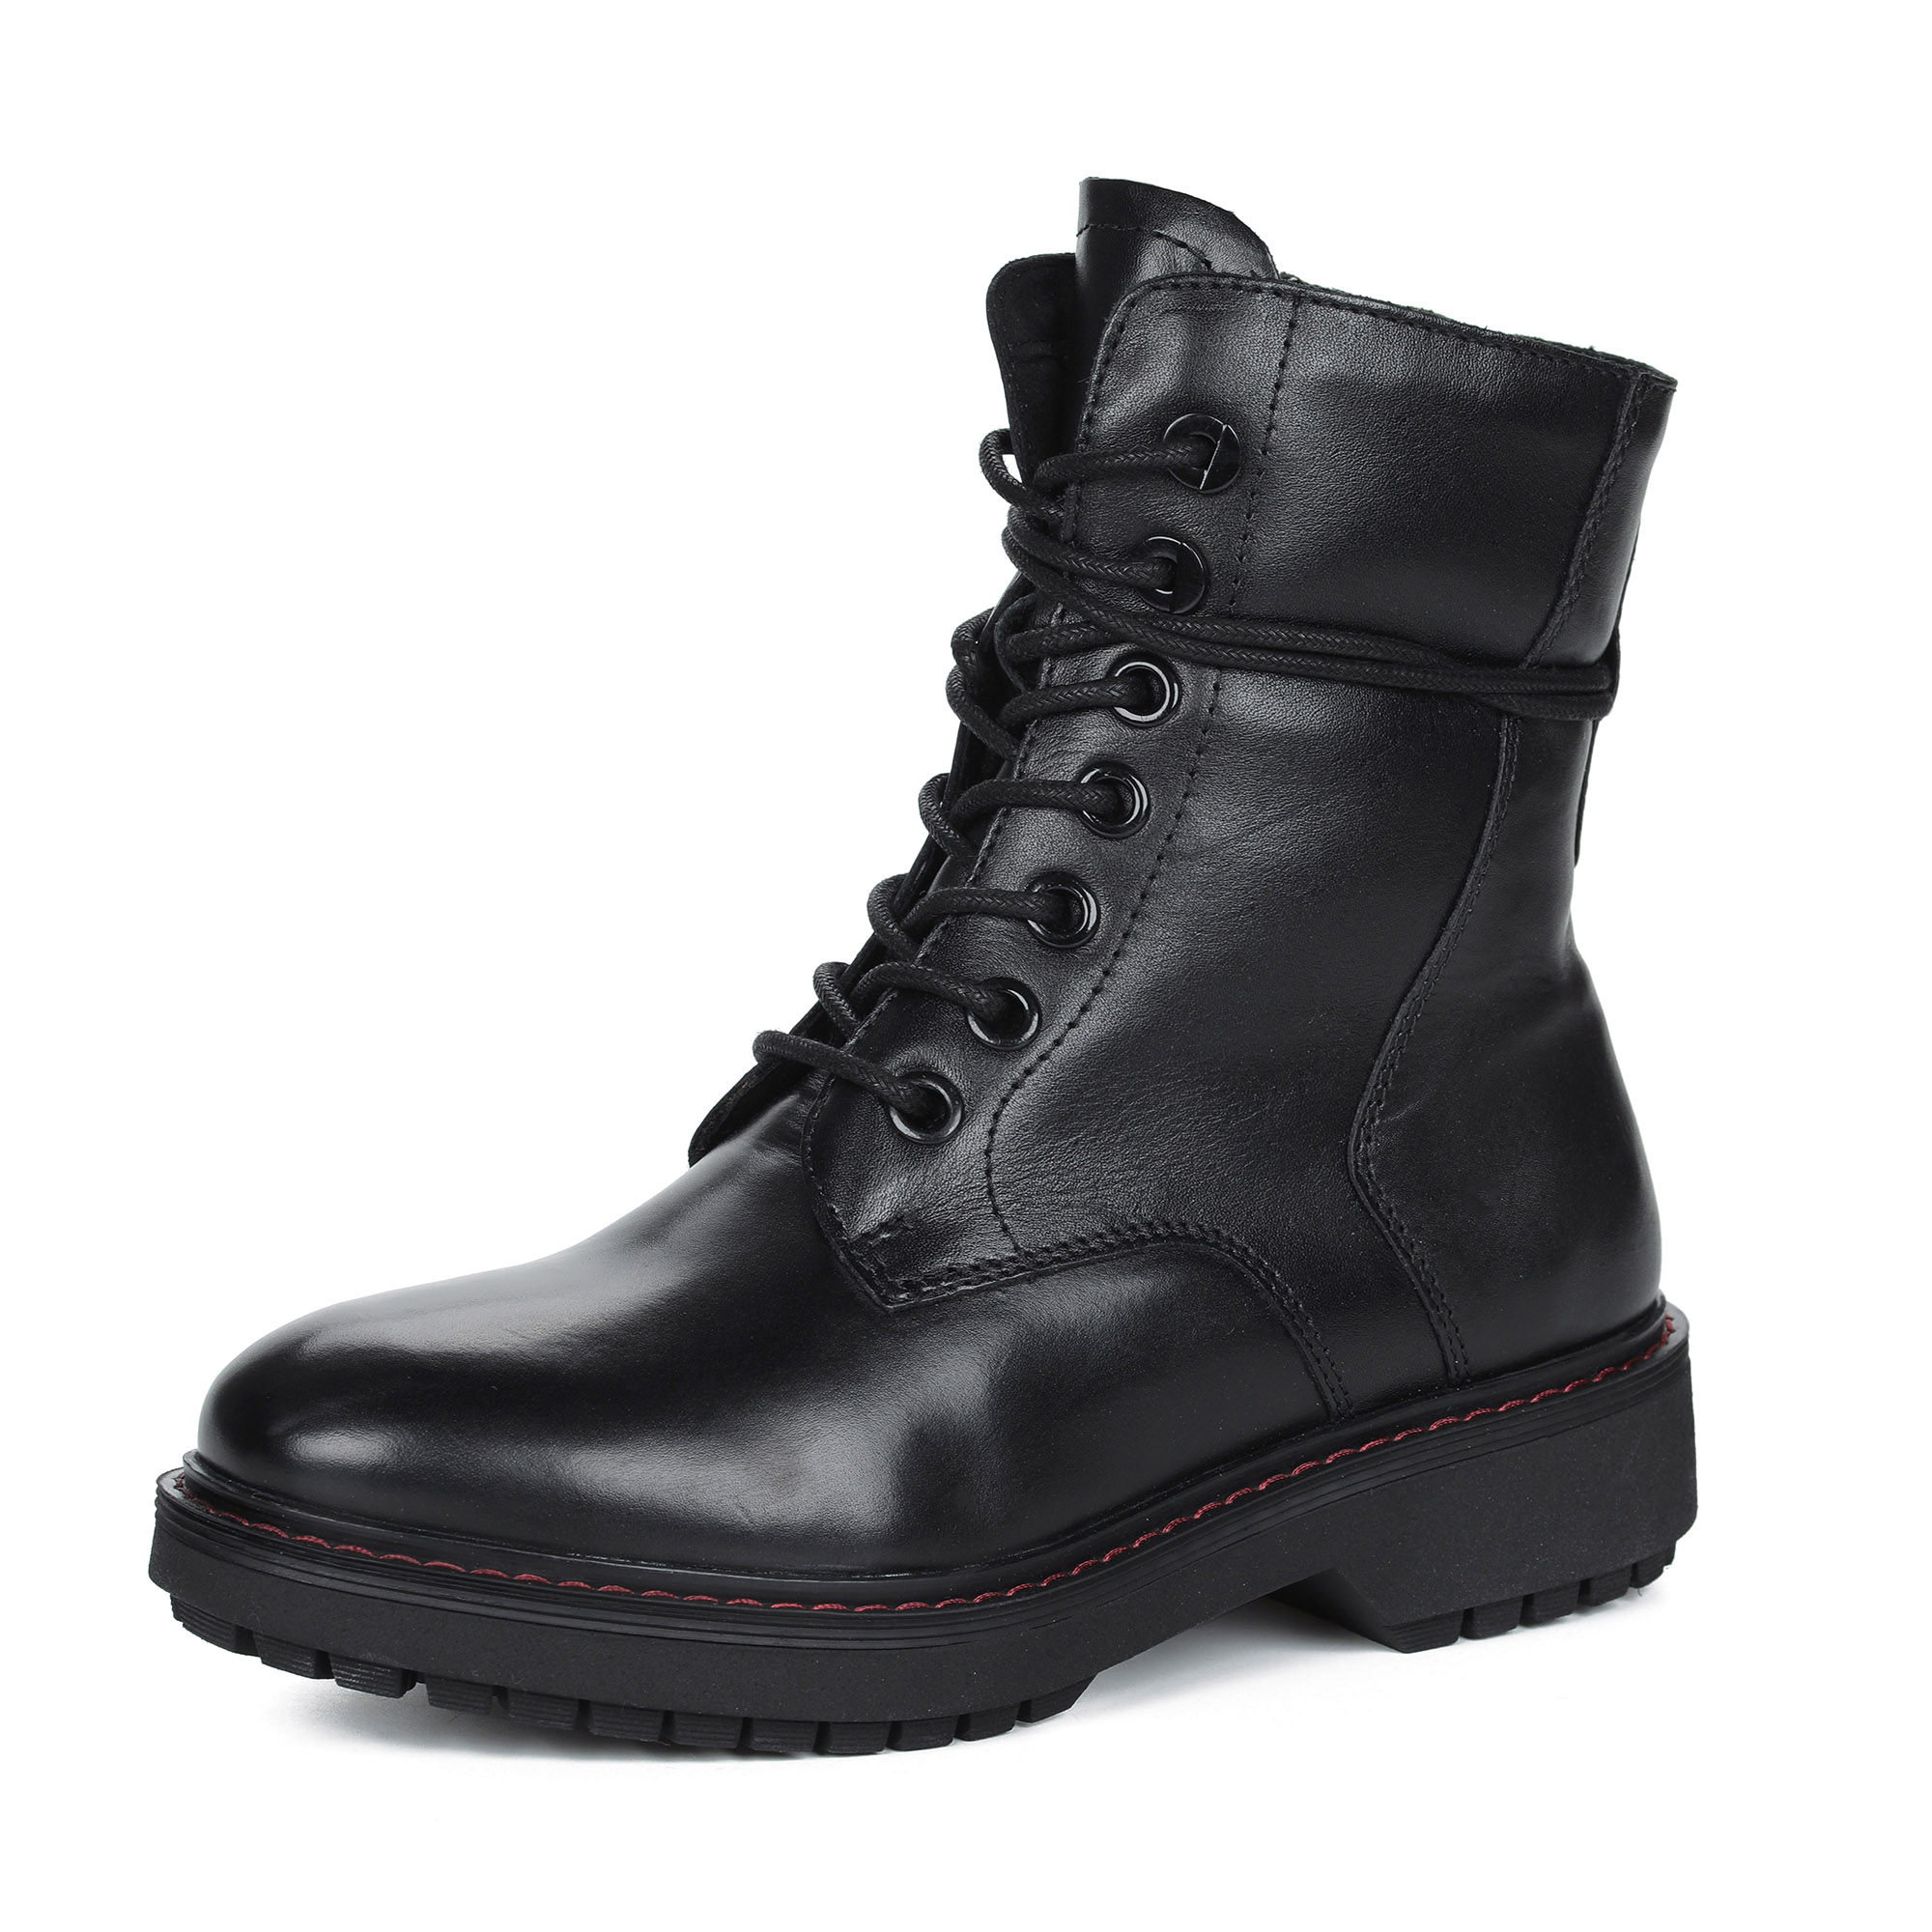 Черные ботинки на шнурках из кожи на подкладке из натуральной шерсти MARCO TOZZI PREMIO черного цвета